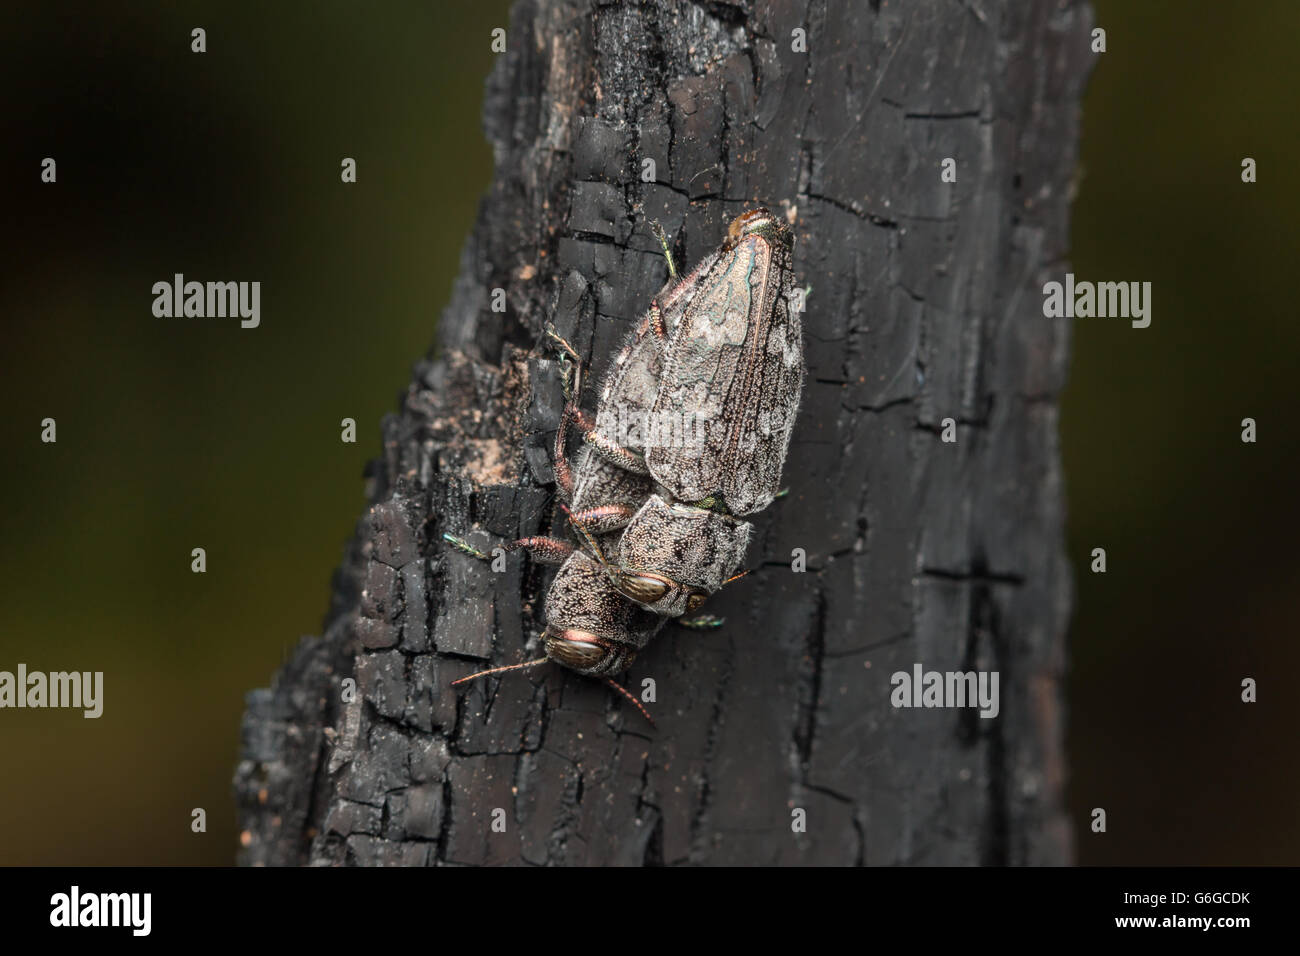 Un par de escarabajos perforadores de madera metálicos (grupo de especies de Chrysobothris femorata) se aparean en los restos carbonizados de un árbol quemado. Foto de stock